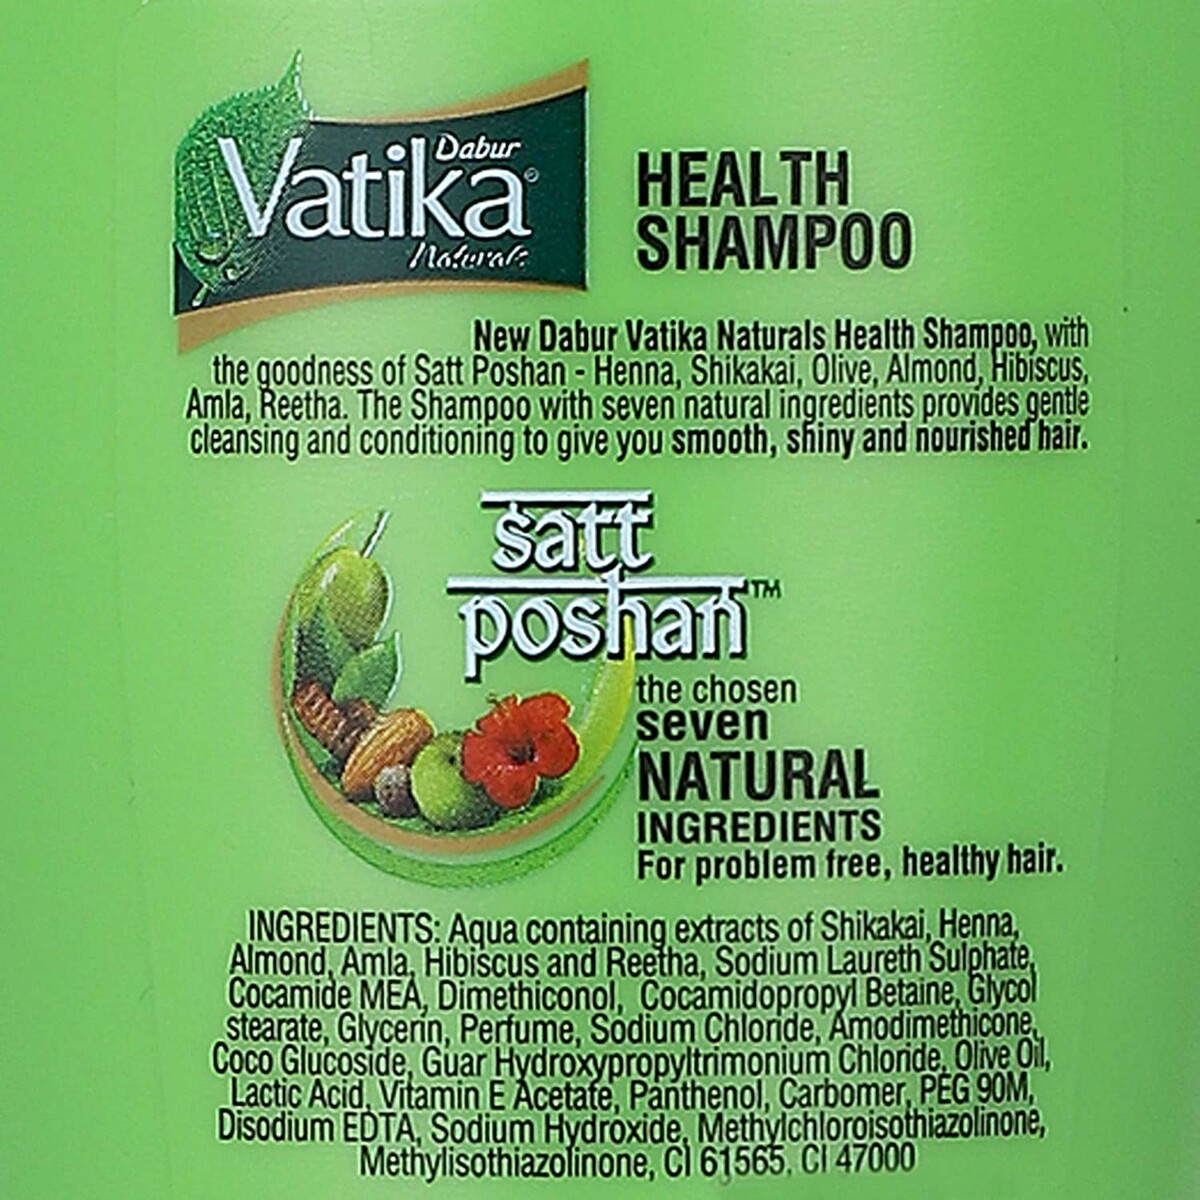 Dabur Vtka Shampoo Health 180ml